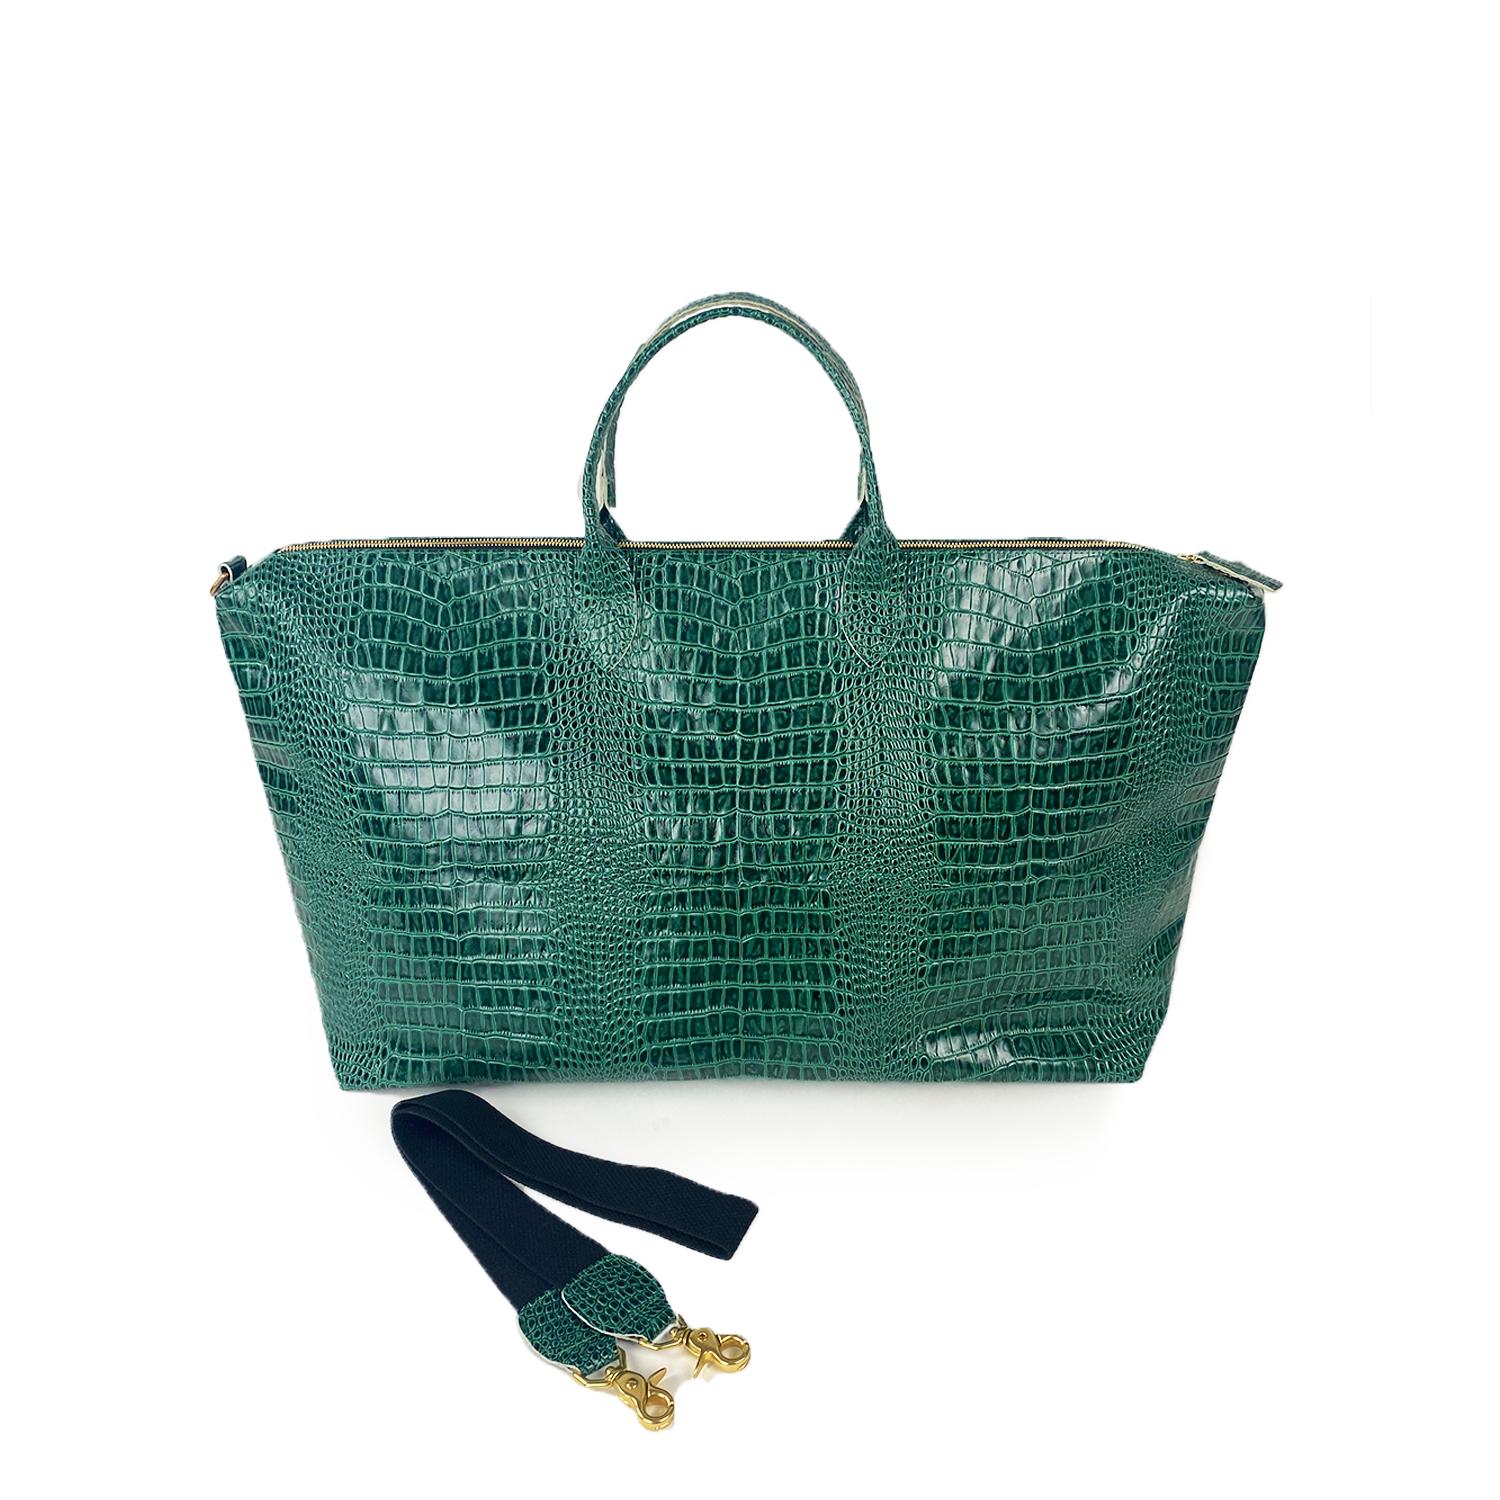 loden green croc bag